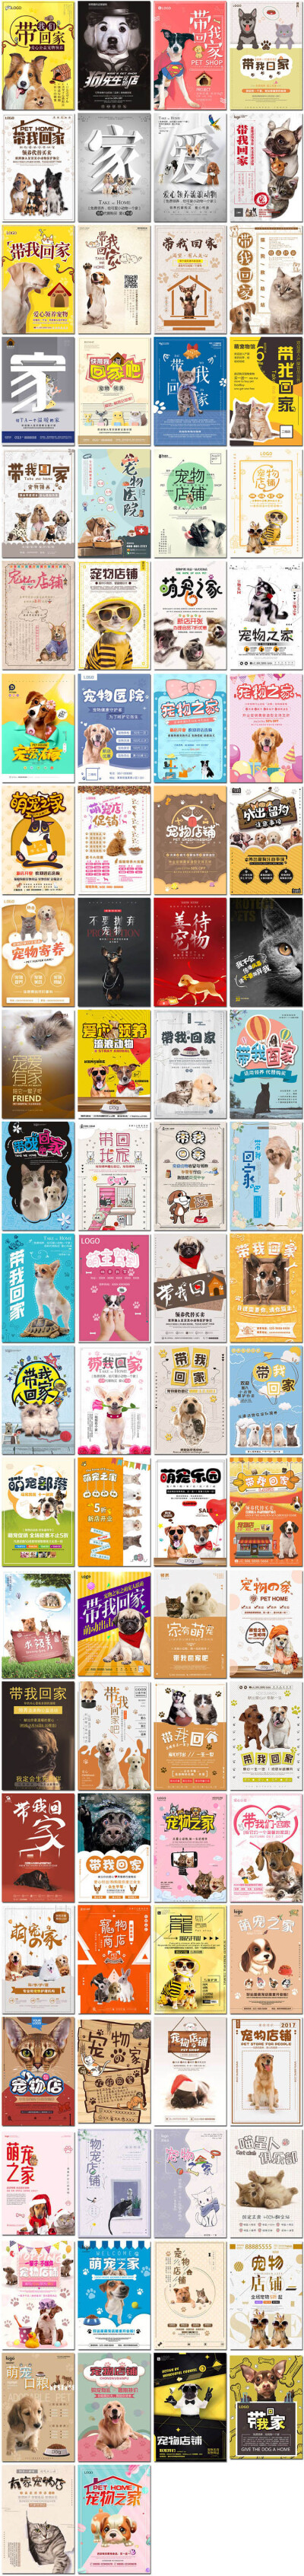 大气宠物海报医院萌宠小猫狗流浪动物领养公益海报素材设计模板